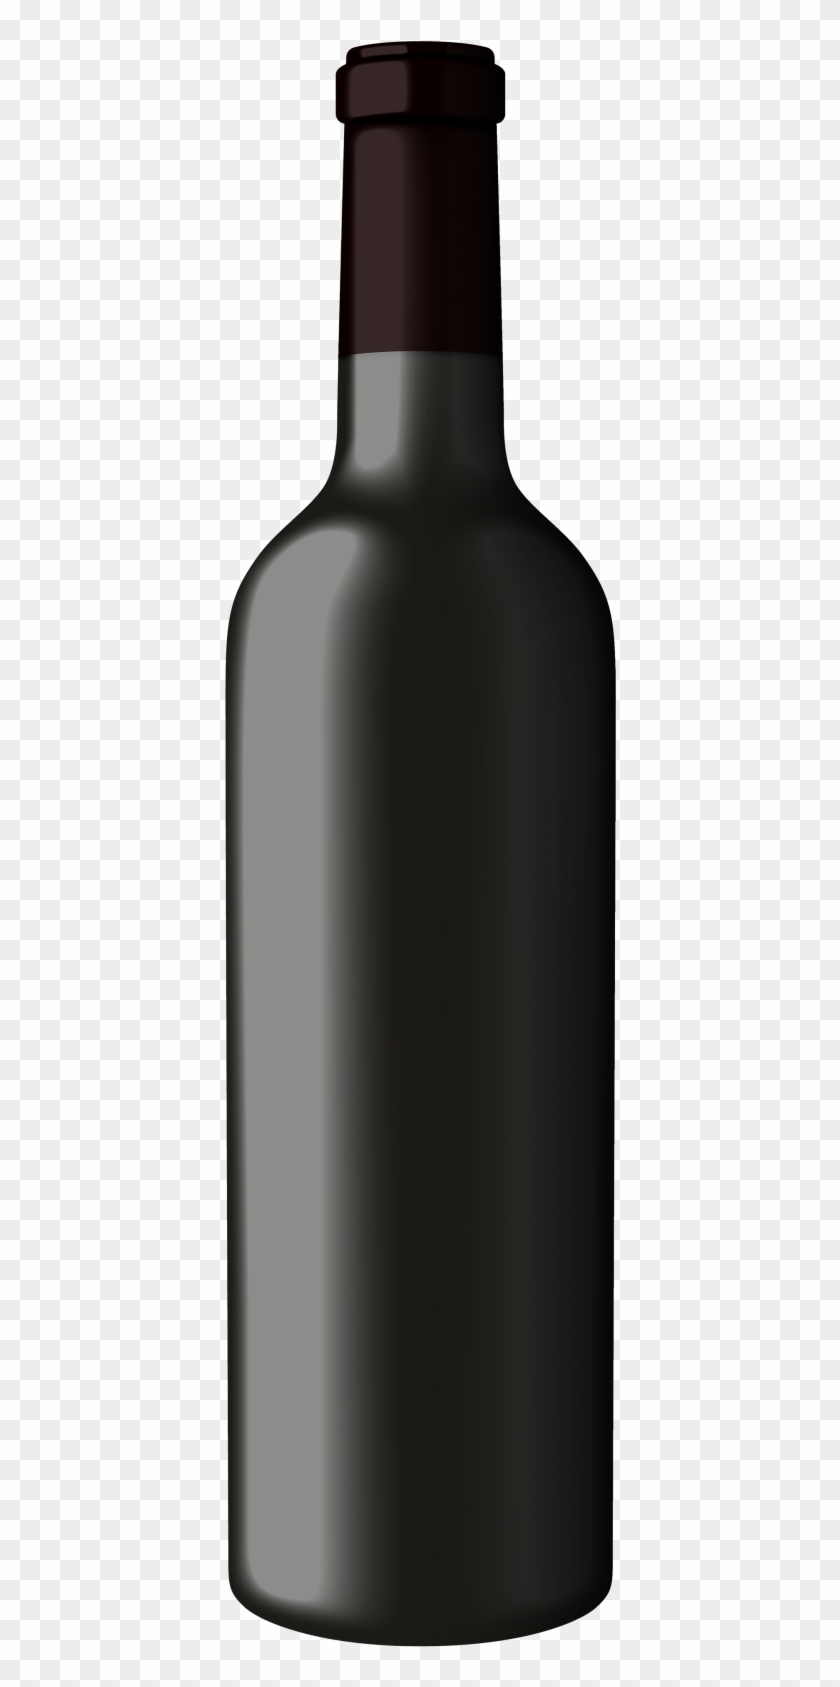 Enter Online Store - Empty Wine Bottle Black #627375